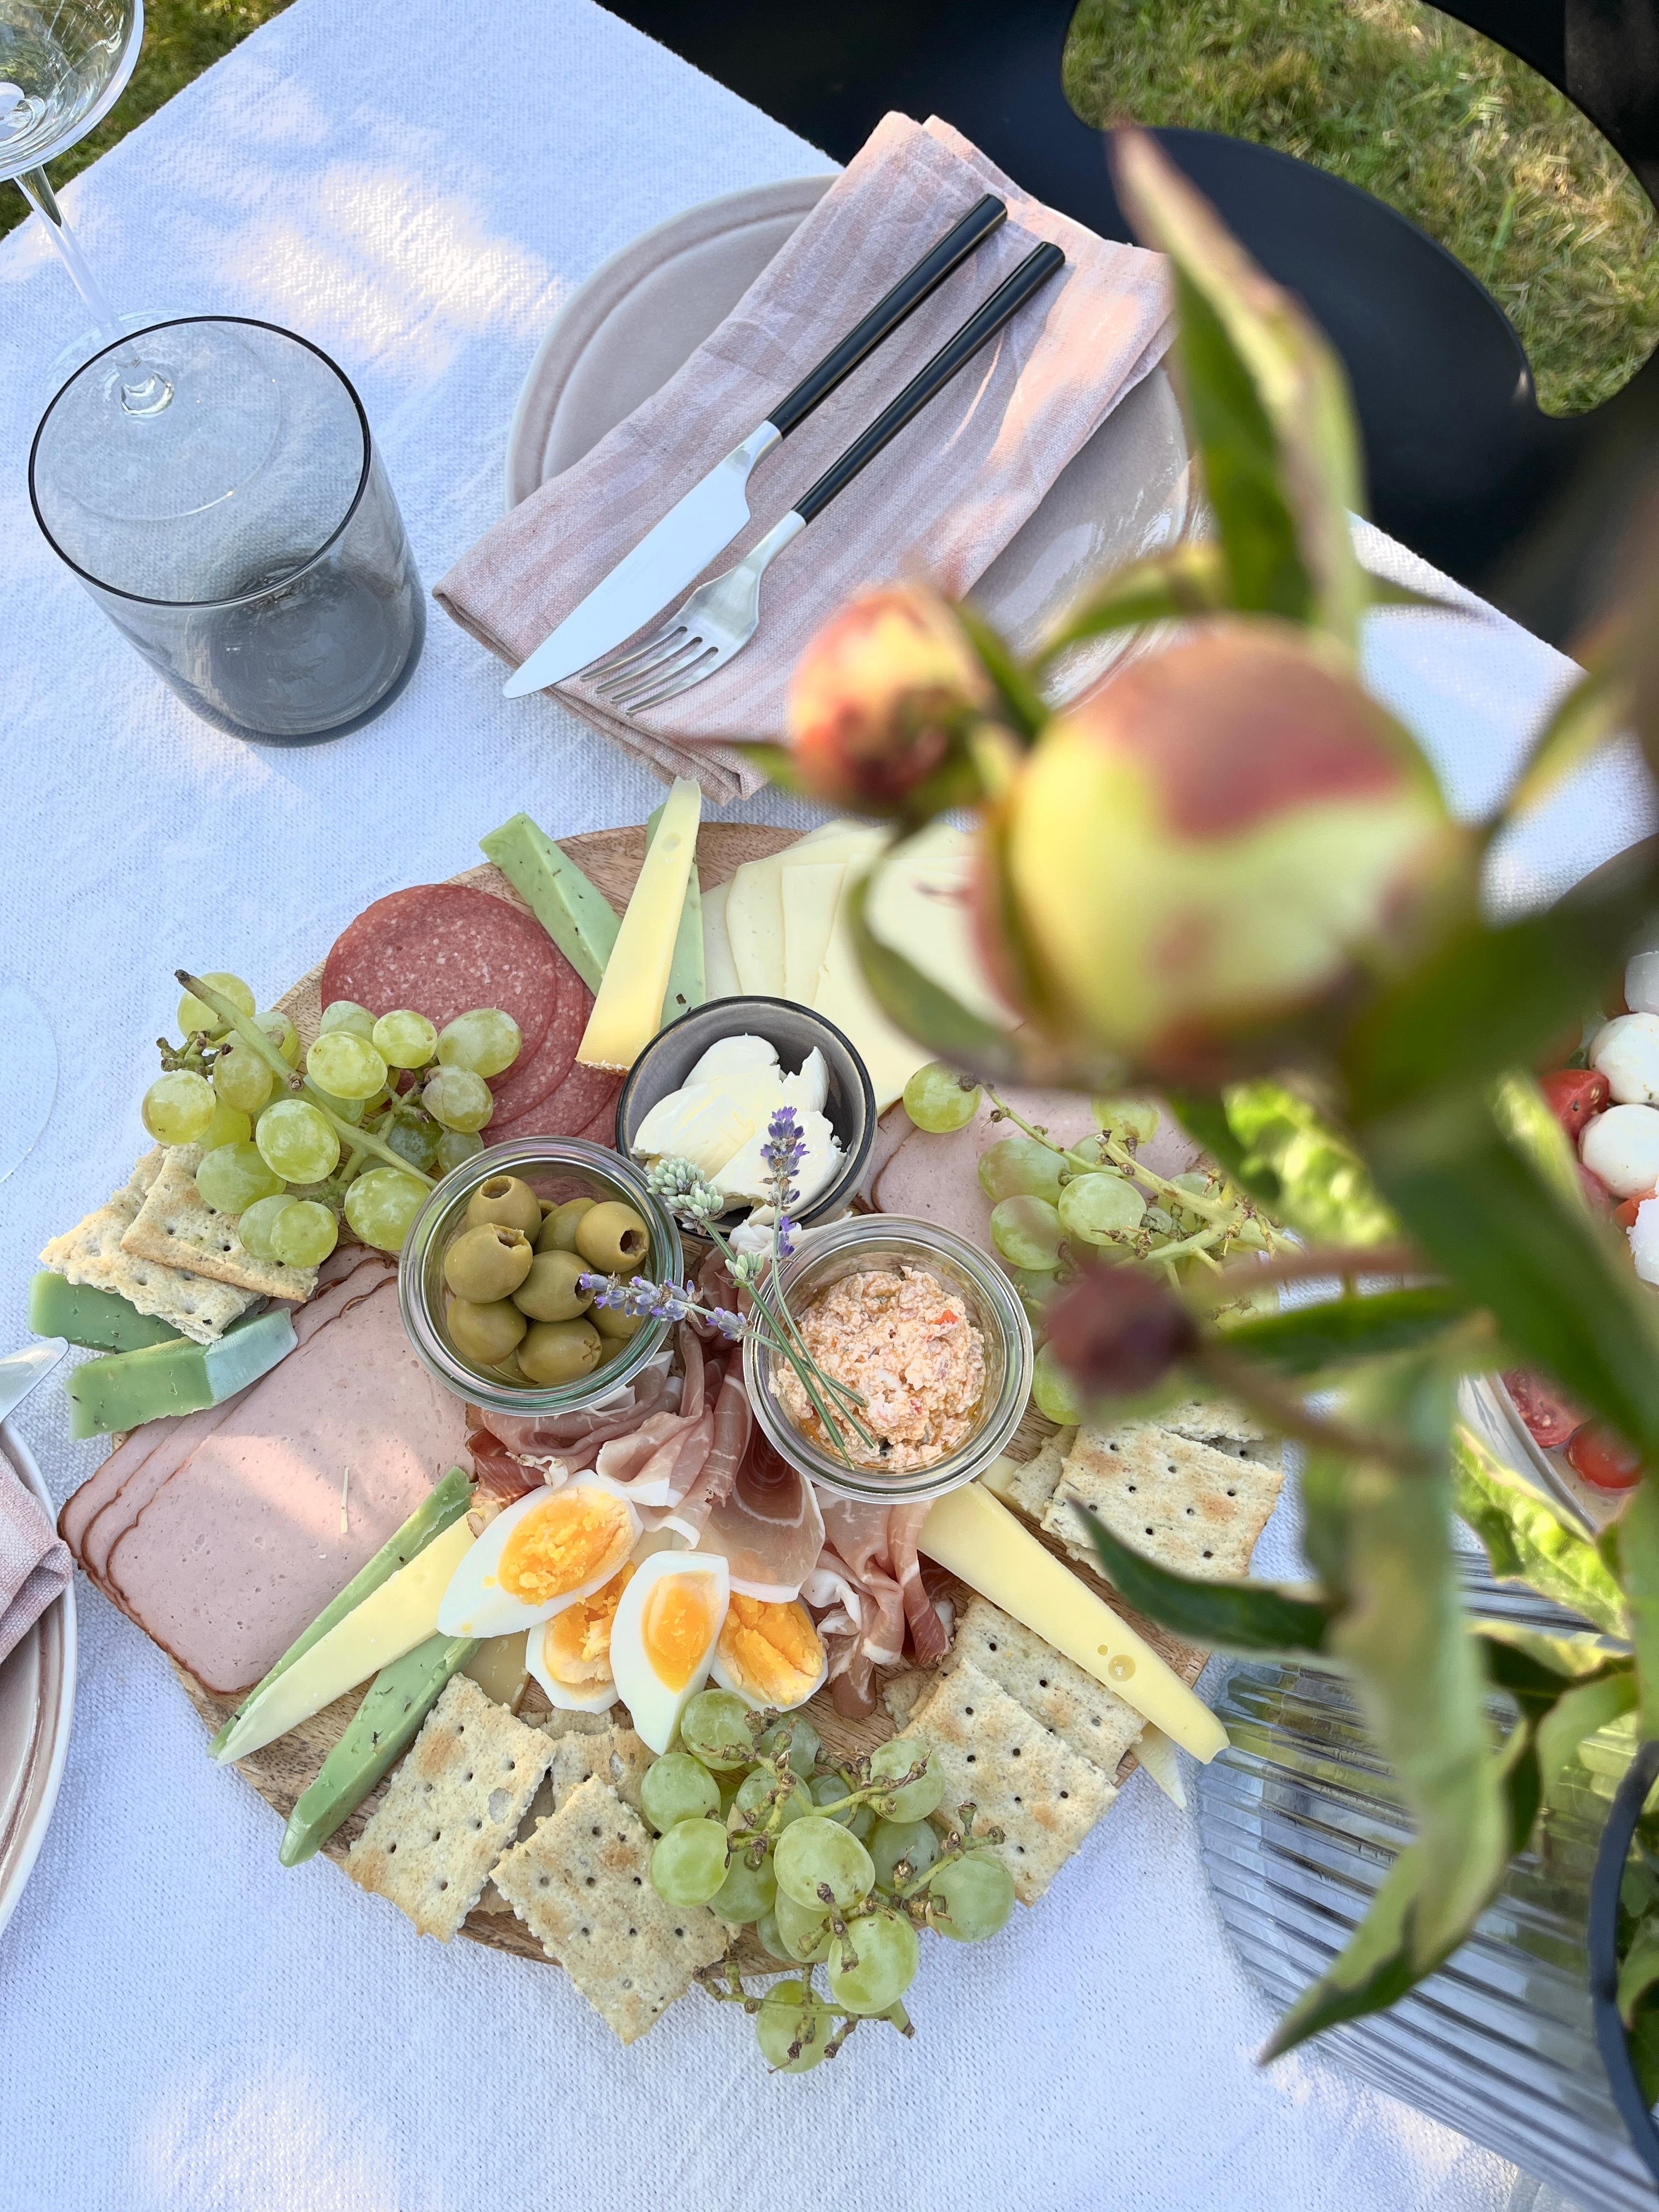 outdoor dining ⛱️
#foodie#garden#outdoordining#gartenzeit#brotzeit#landleben#pfingstrosen#freshflowers#outdoorliving